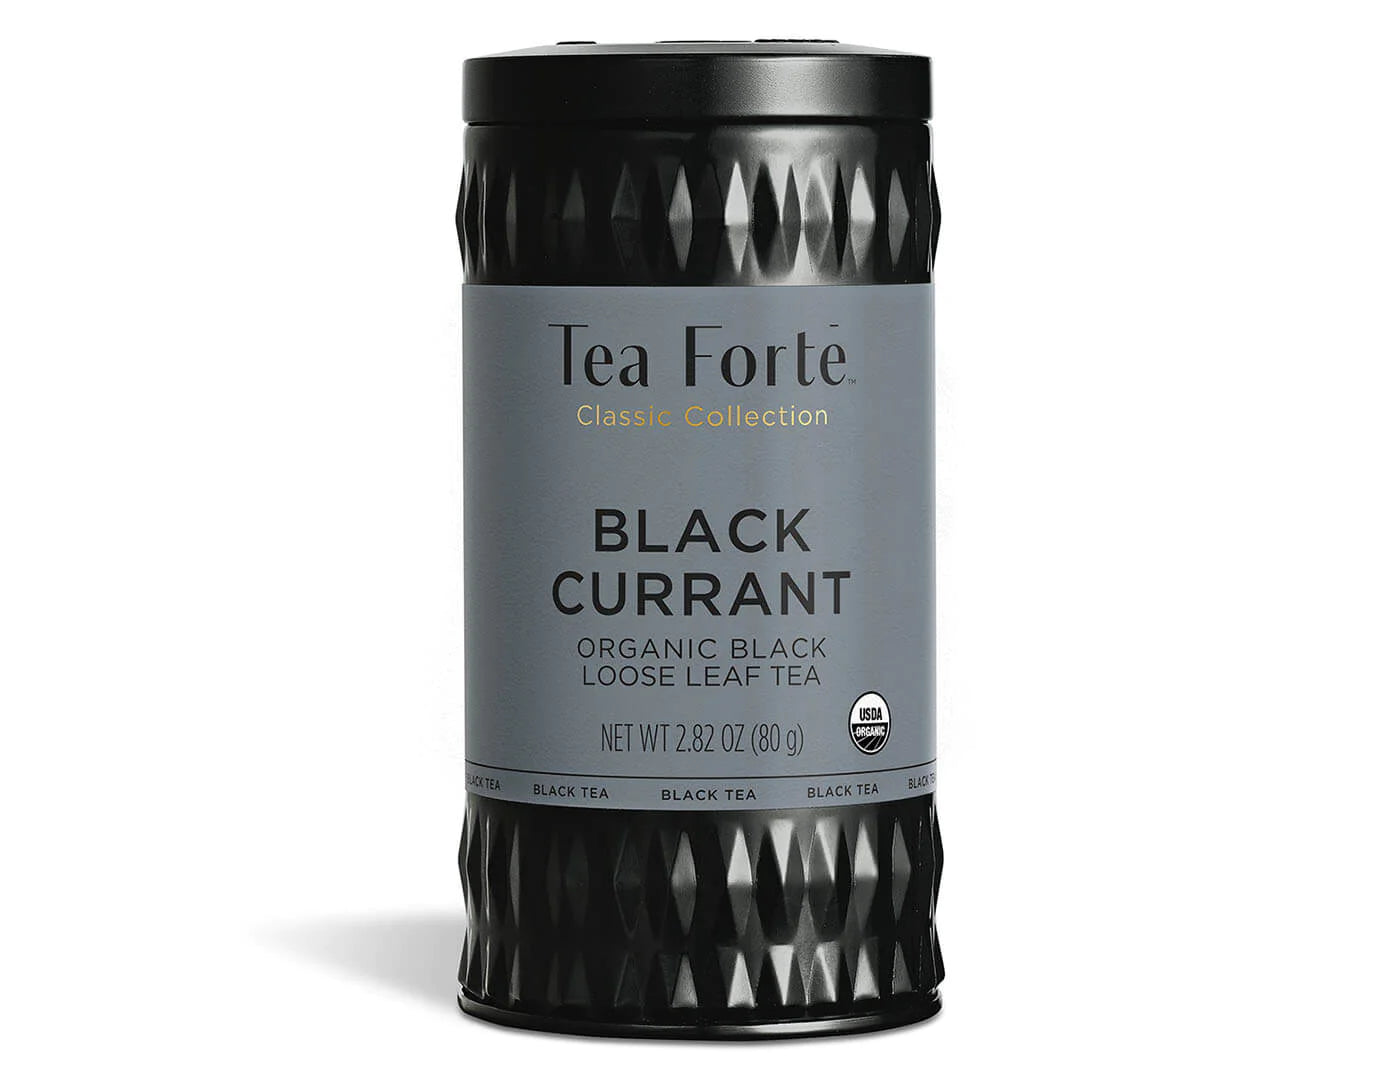 TEA FORTE LOOSE LEAF TEA CANISTERS BLACK CURRANT TEA